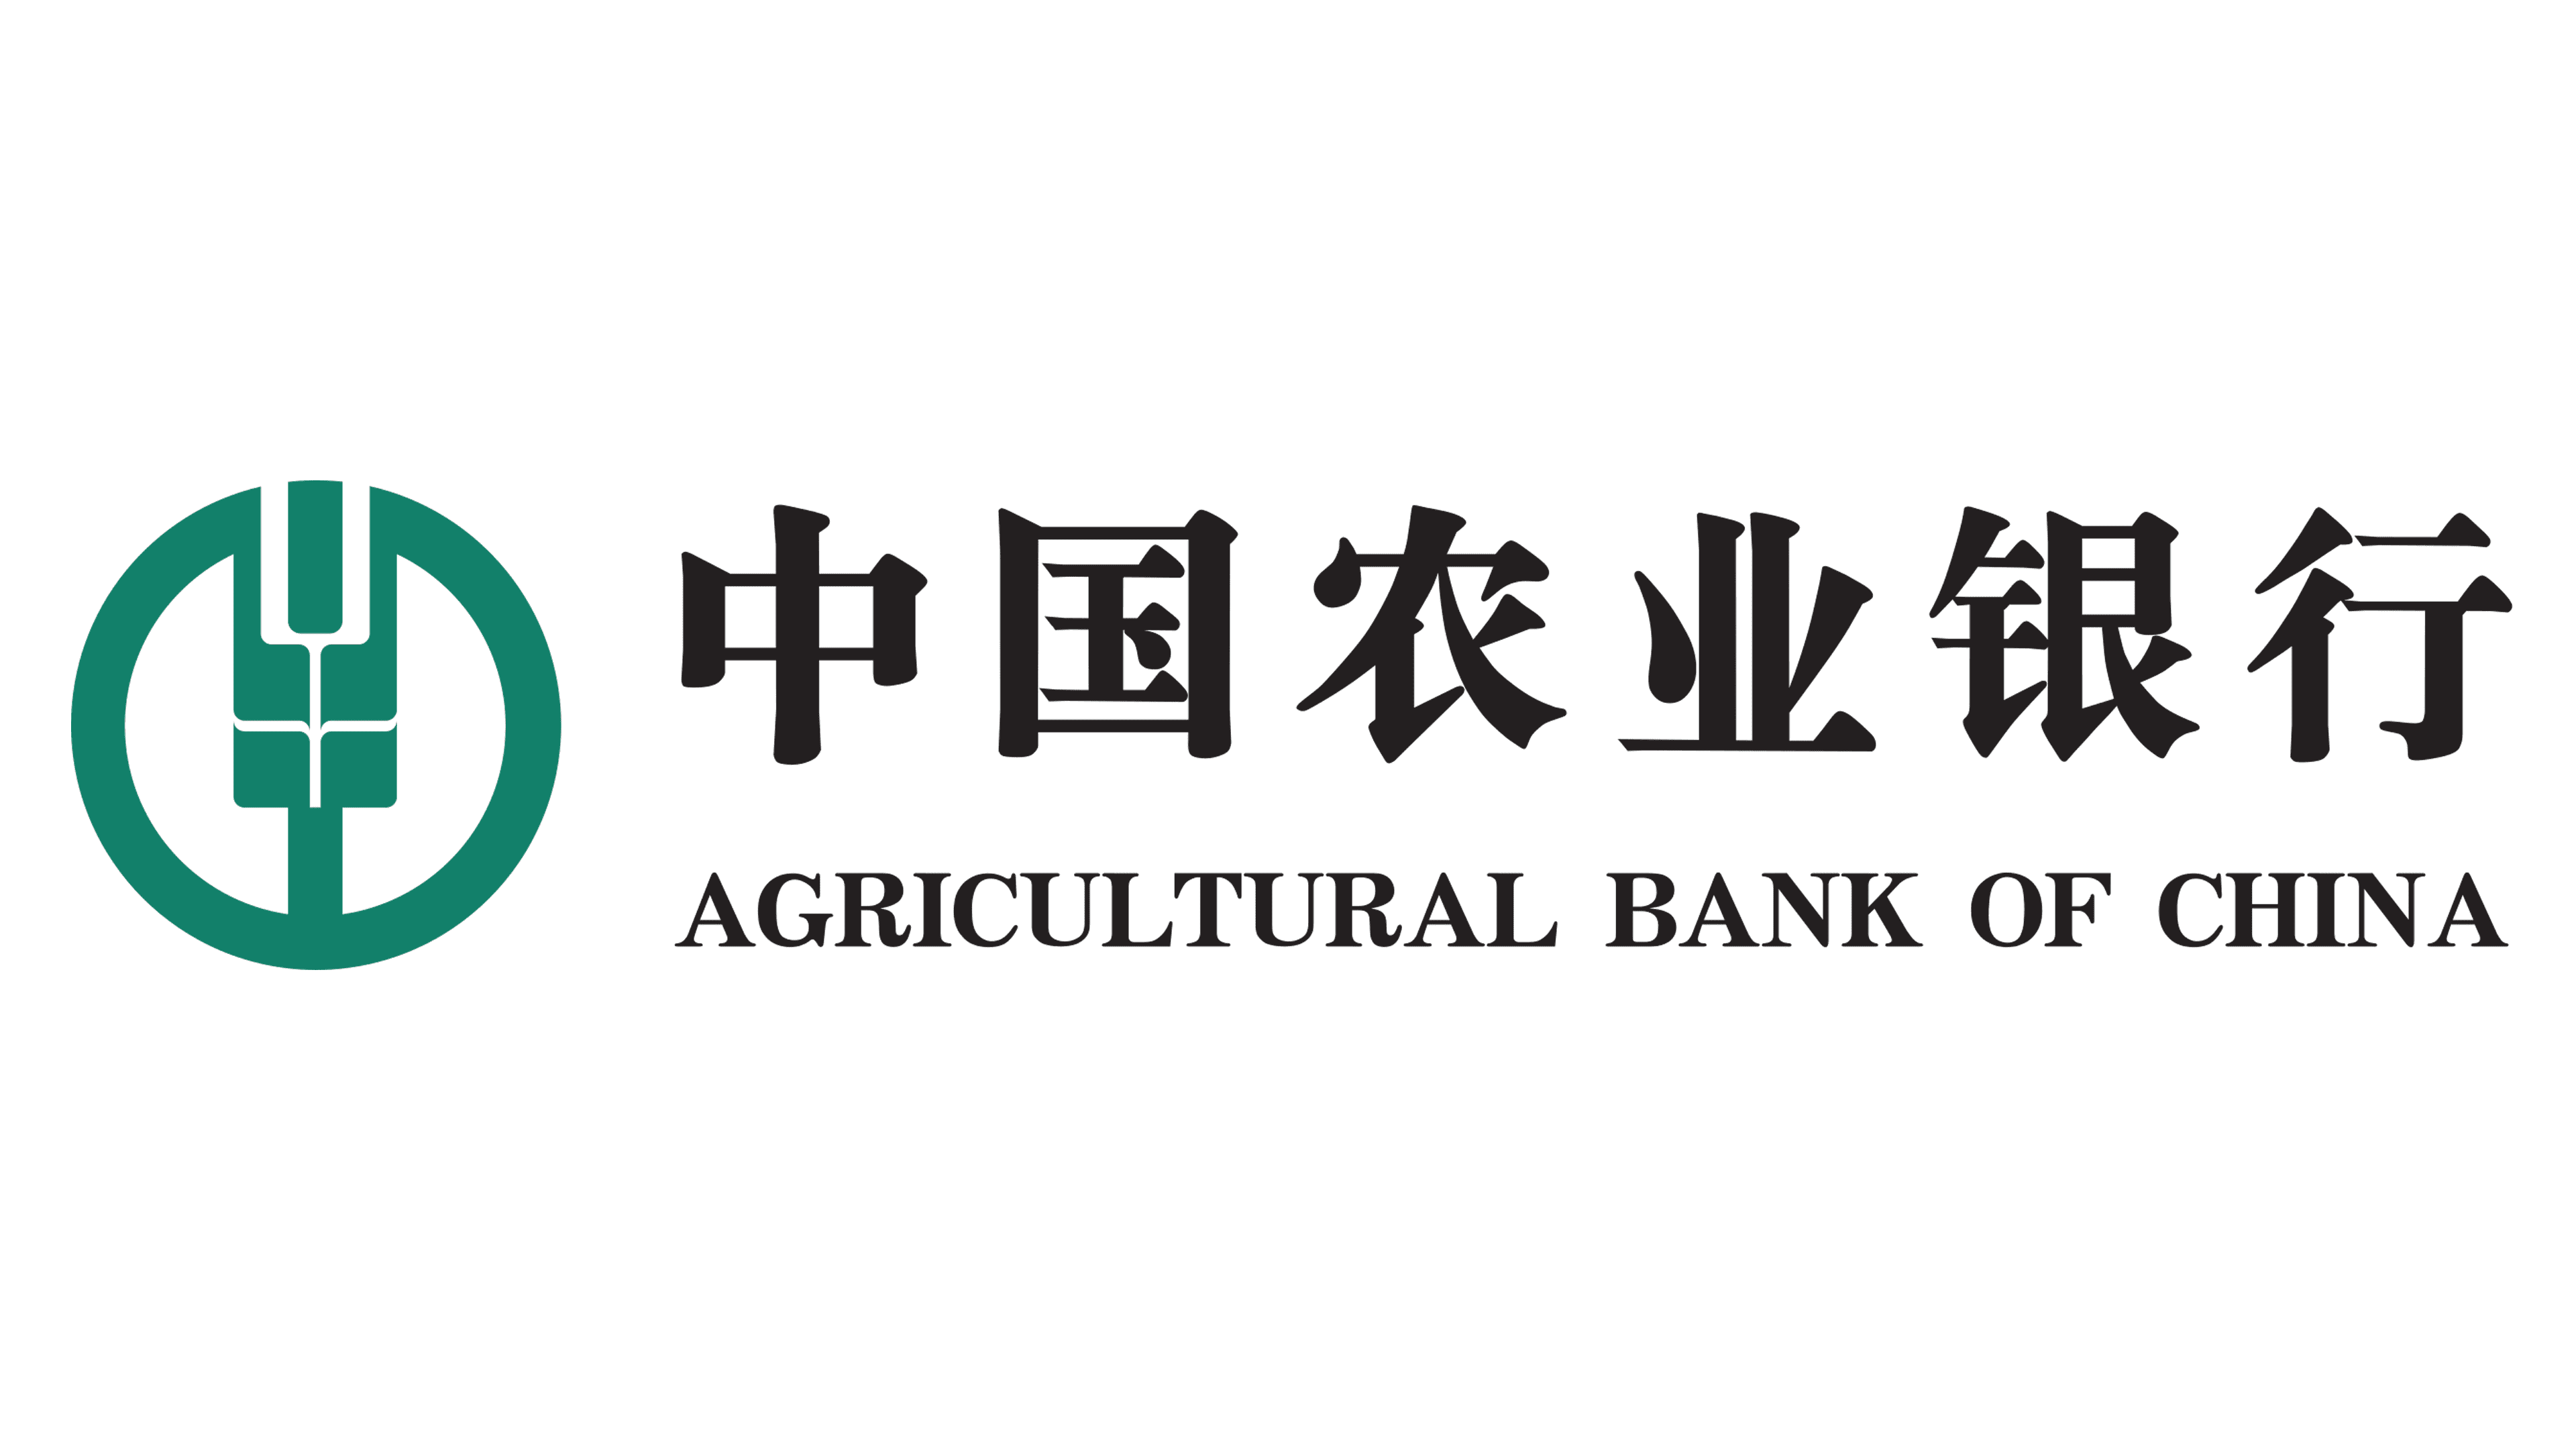 Cnaps bank of china. Китайский сельскохозяйственный банк. Китайские логотипы банков. China логотип. Логотип банка of China.